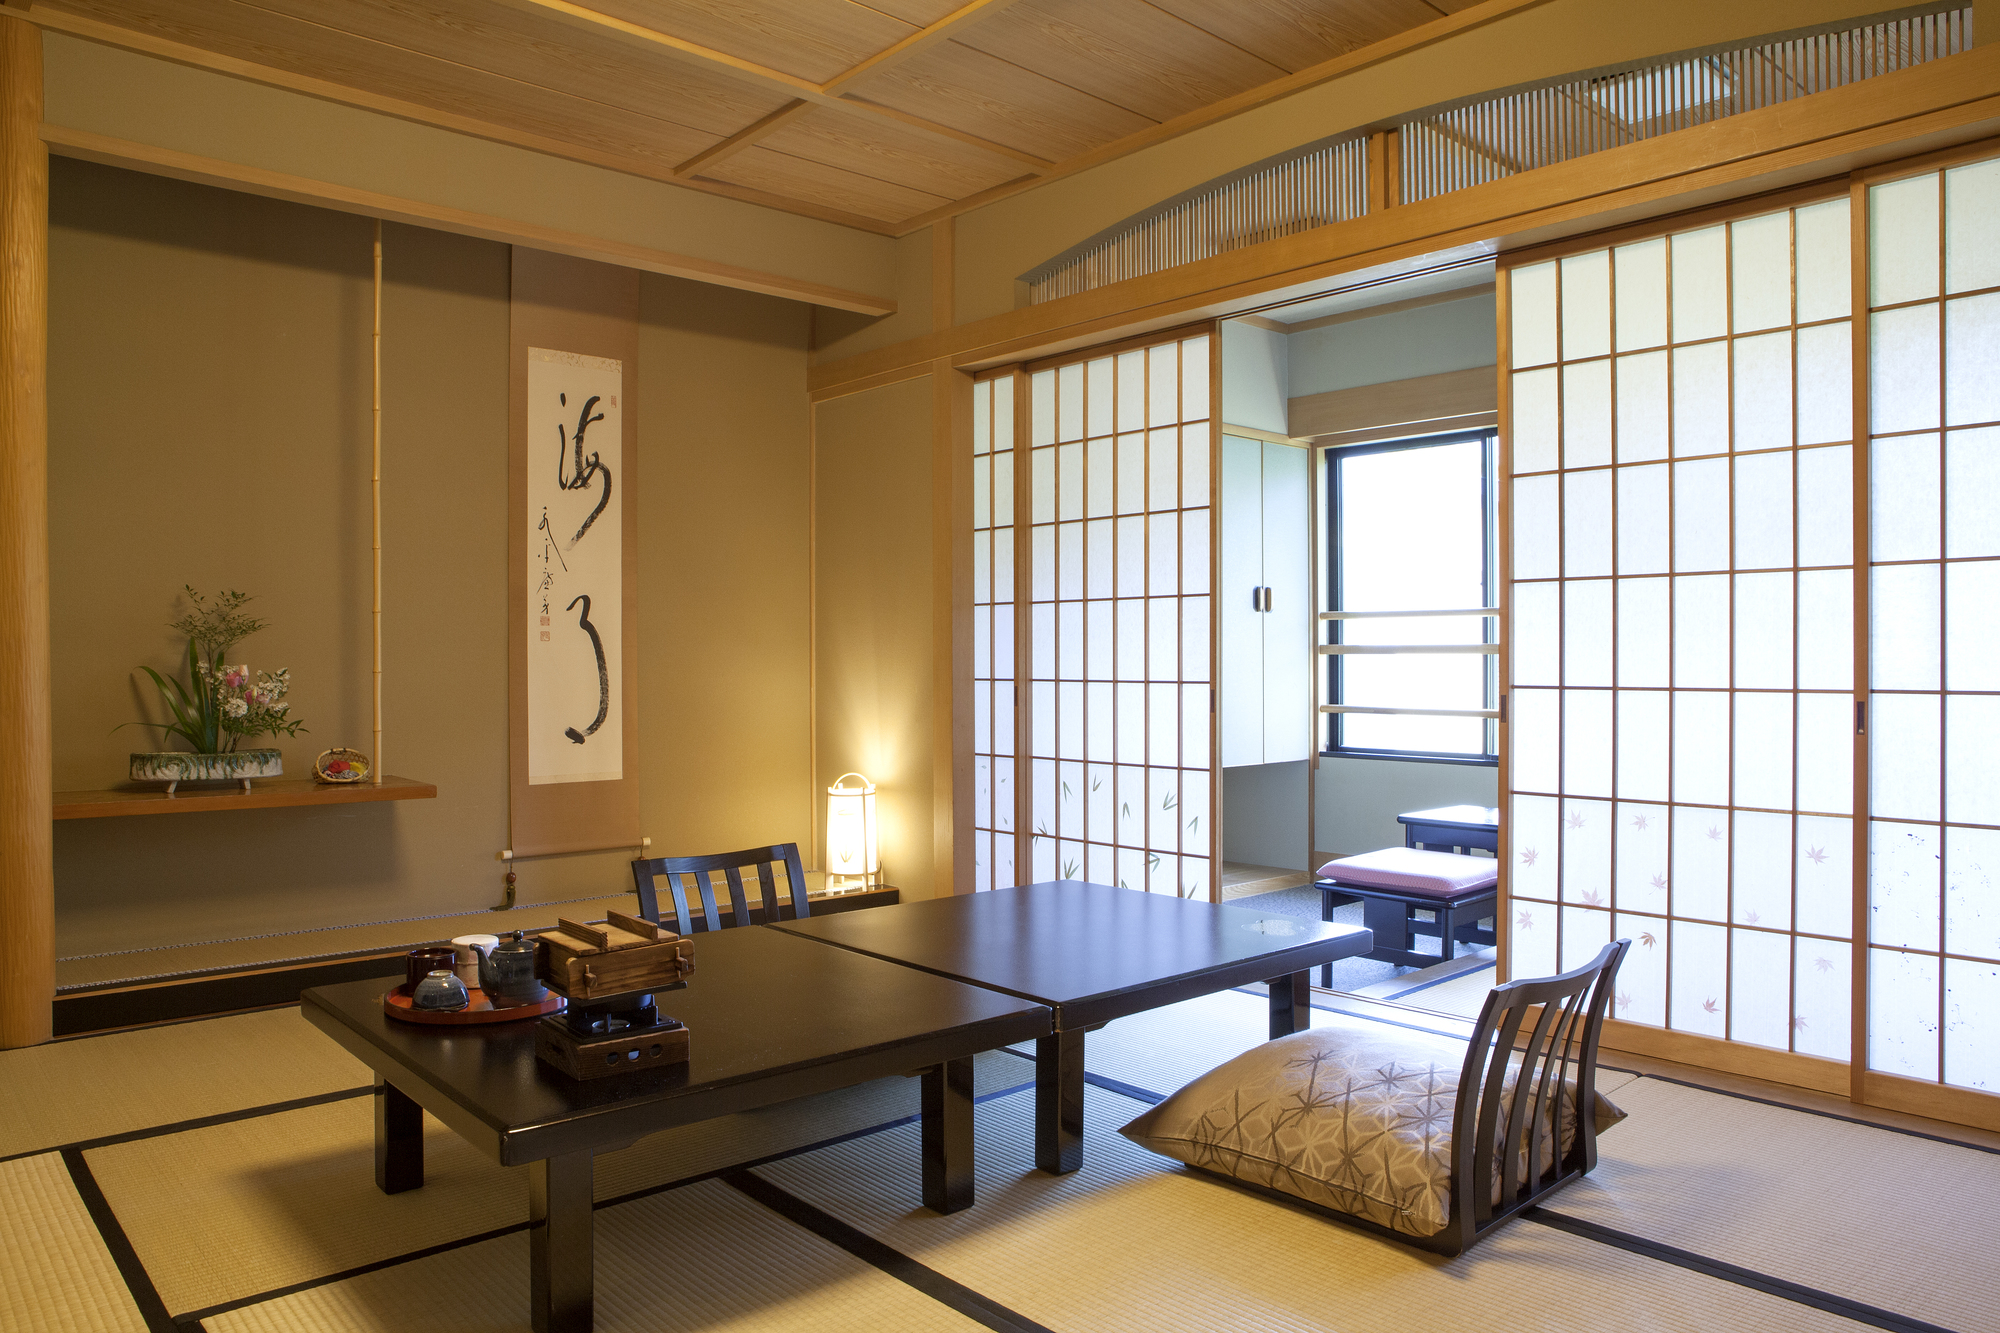 Đặc điểm nổi bật trong những ngôi nhà tối giản kiểu Nhật